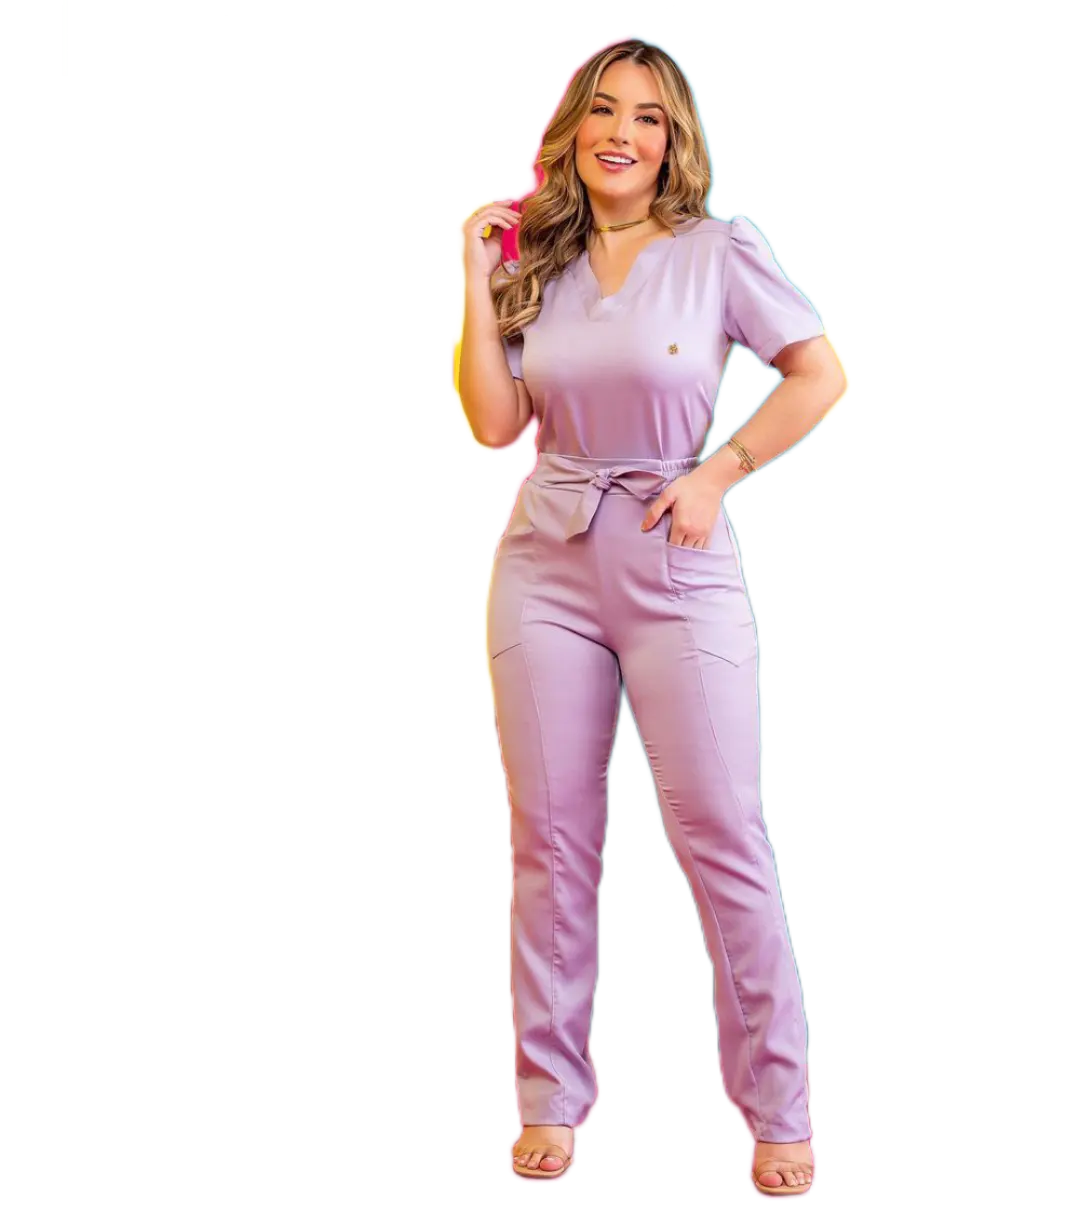 Uniformes personalizados de LICRA para mujer, conjuntos de uniformes elásticos para médicos, enfermeras